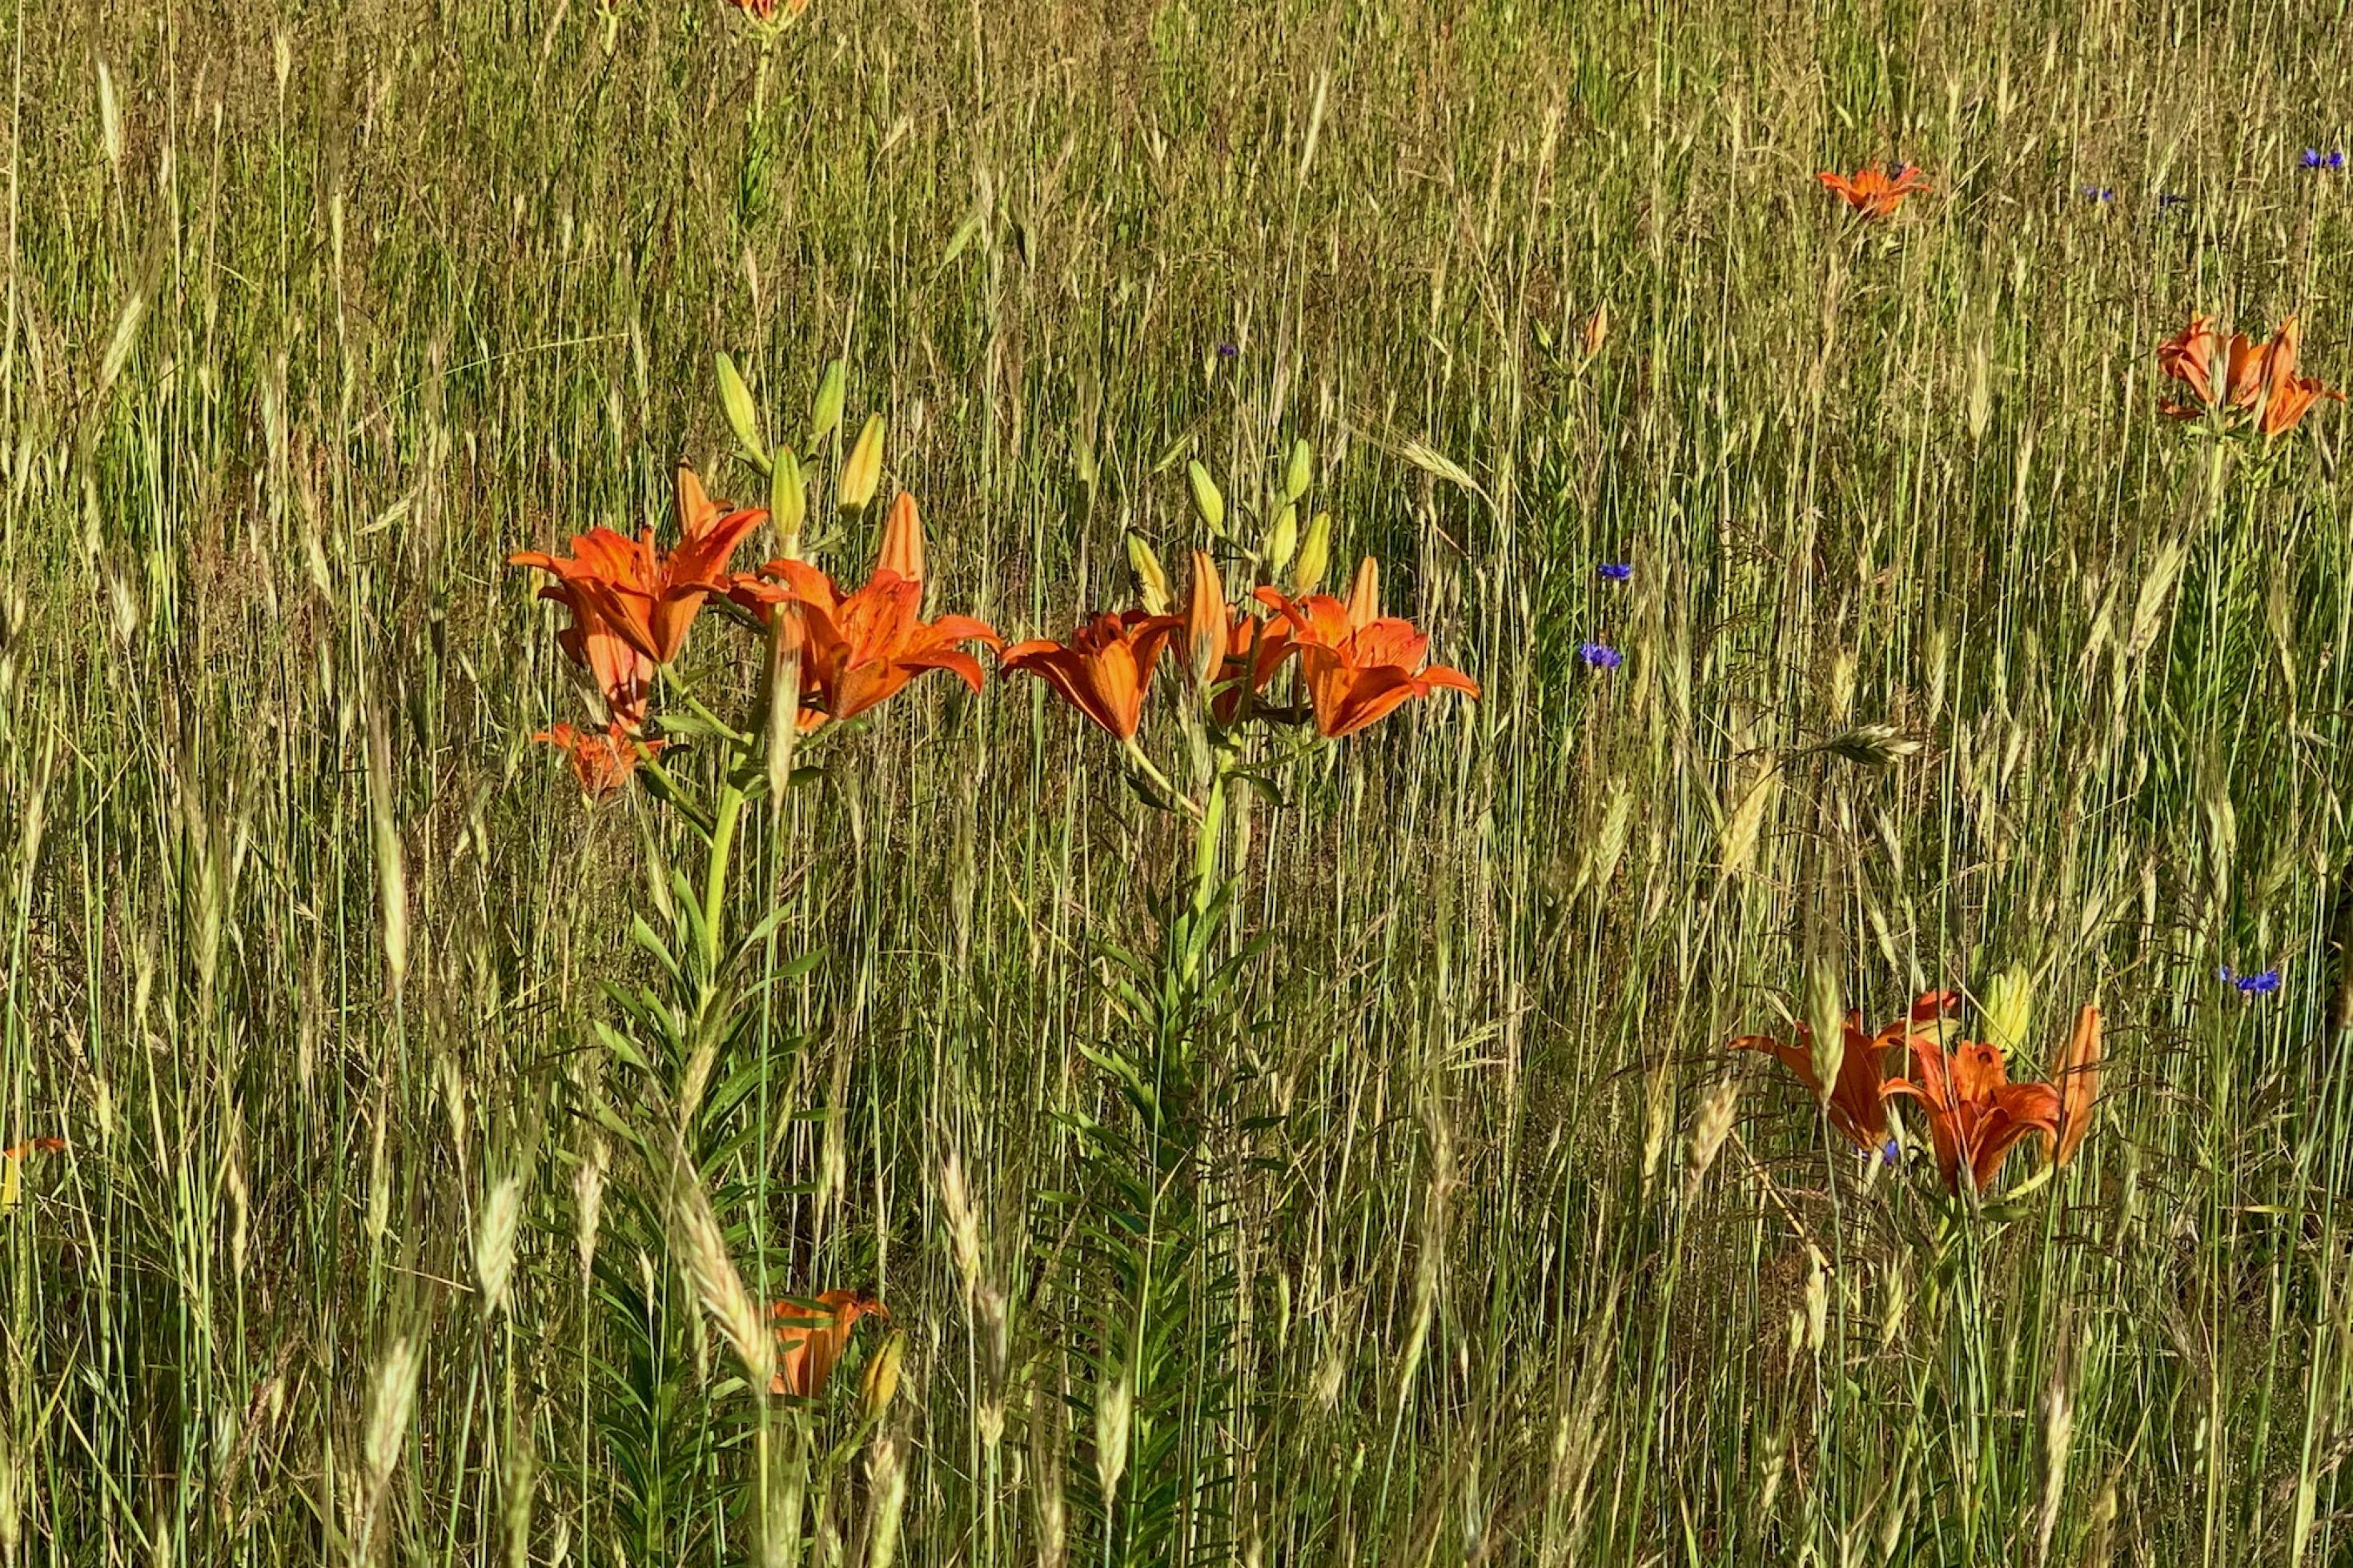 Orangefarbene Blüten von Feuerlilien zwischen Roggenähren in einem Feld